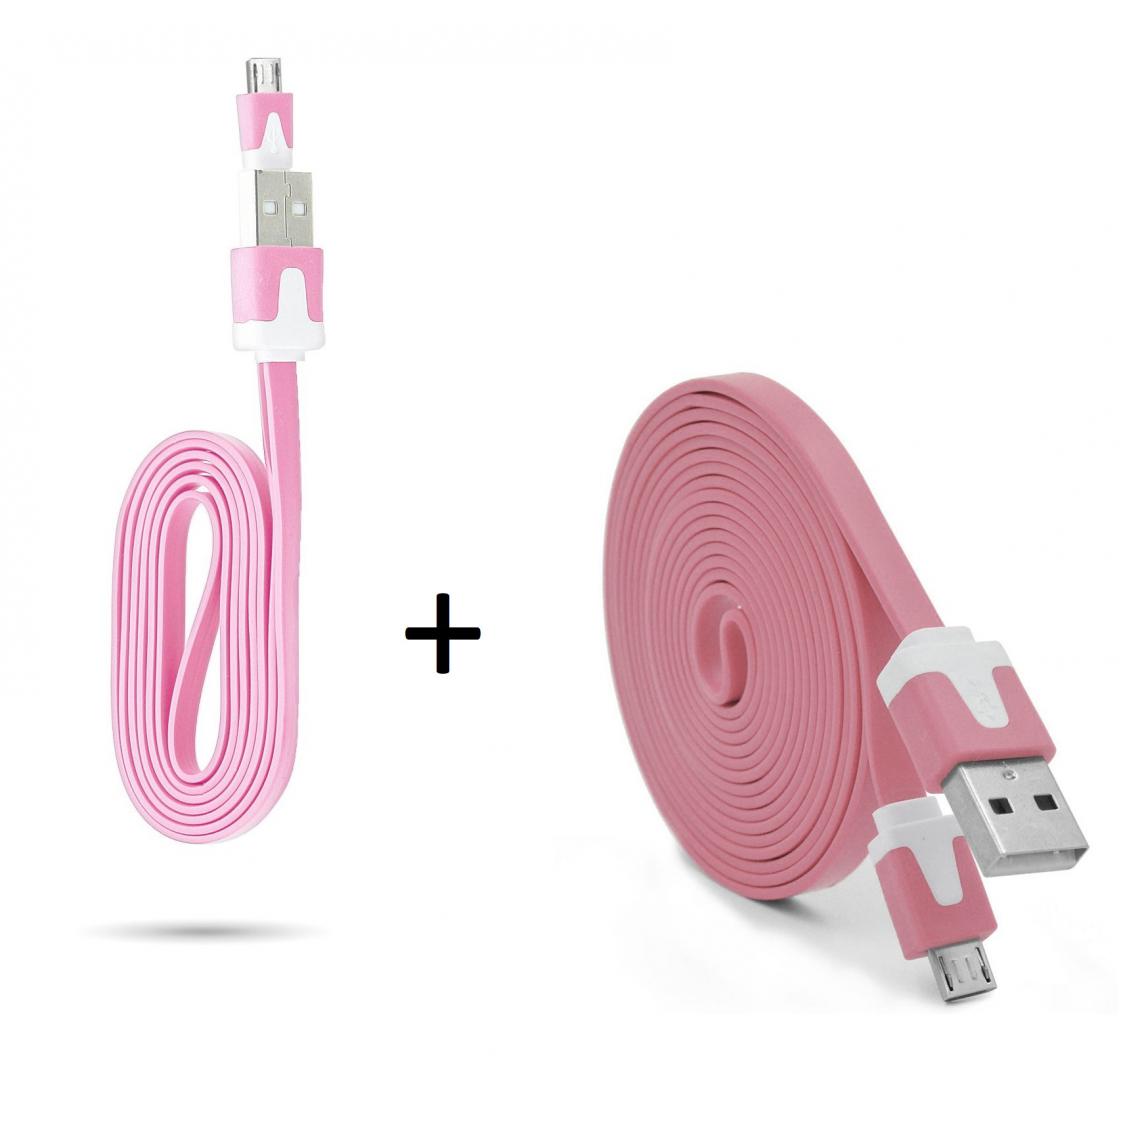 Shot - Pack Chargeur pour Ultimate Ears BLAST Smartphone Micro USB (Cable Noodle 3m + Cable Noodle 1m) Android (ROSE) - Chargeur secteur téléphone